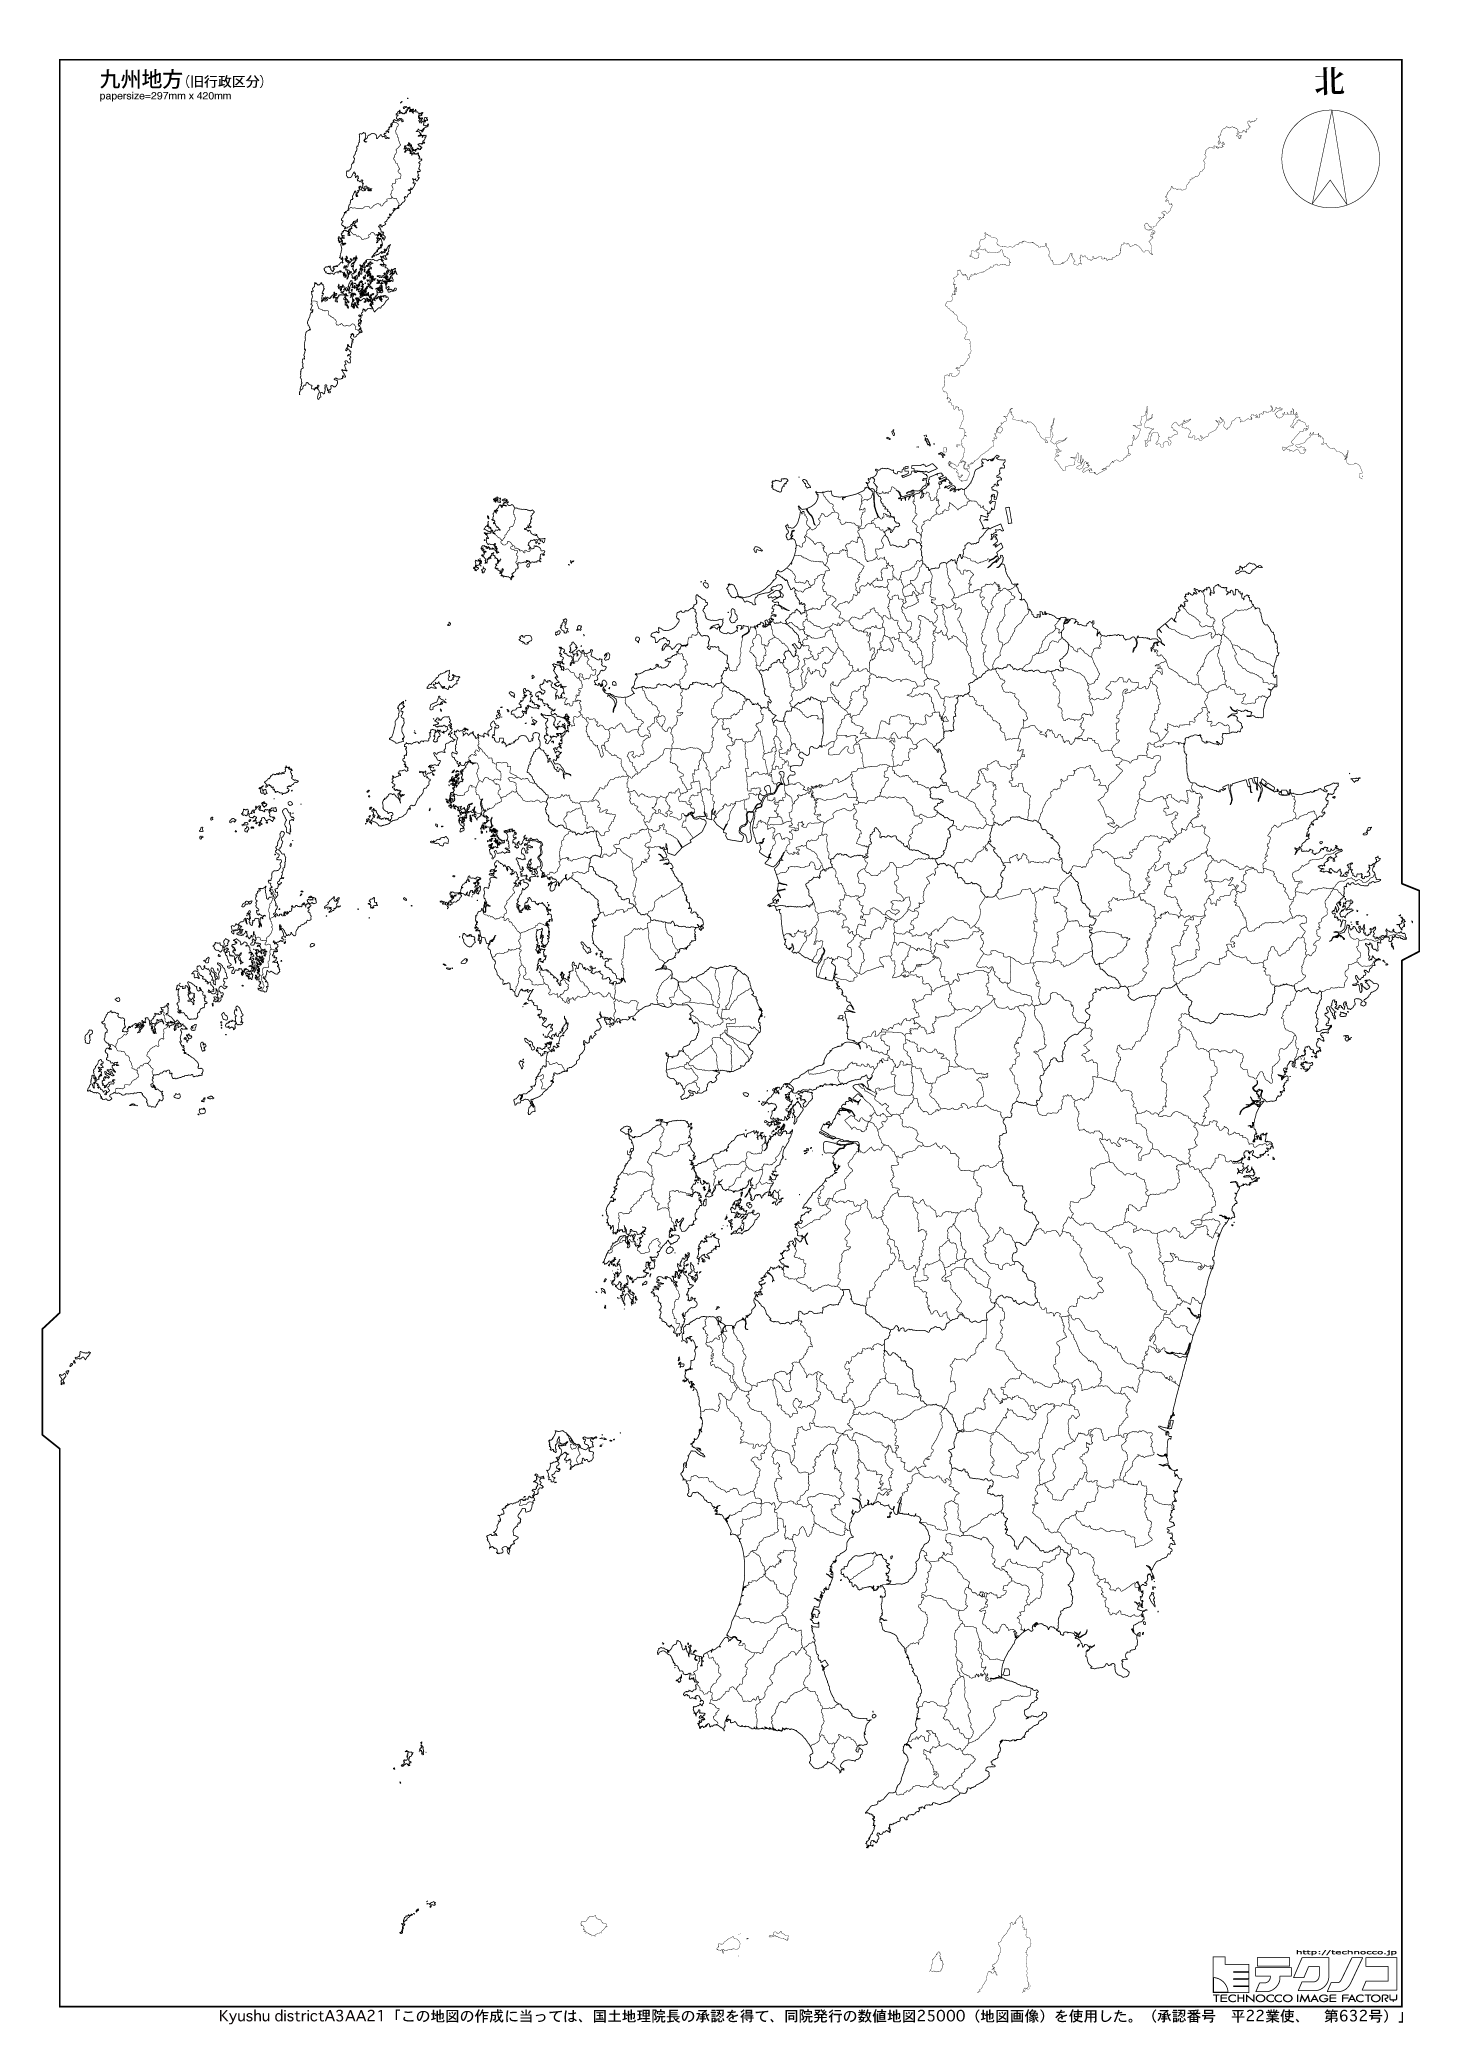 九州地方の白地図